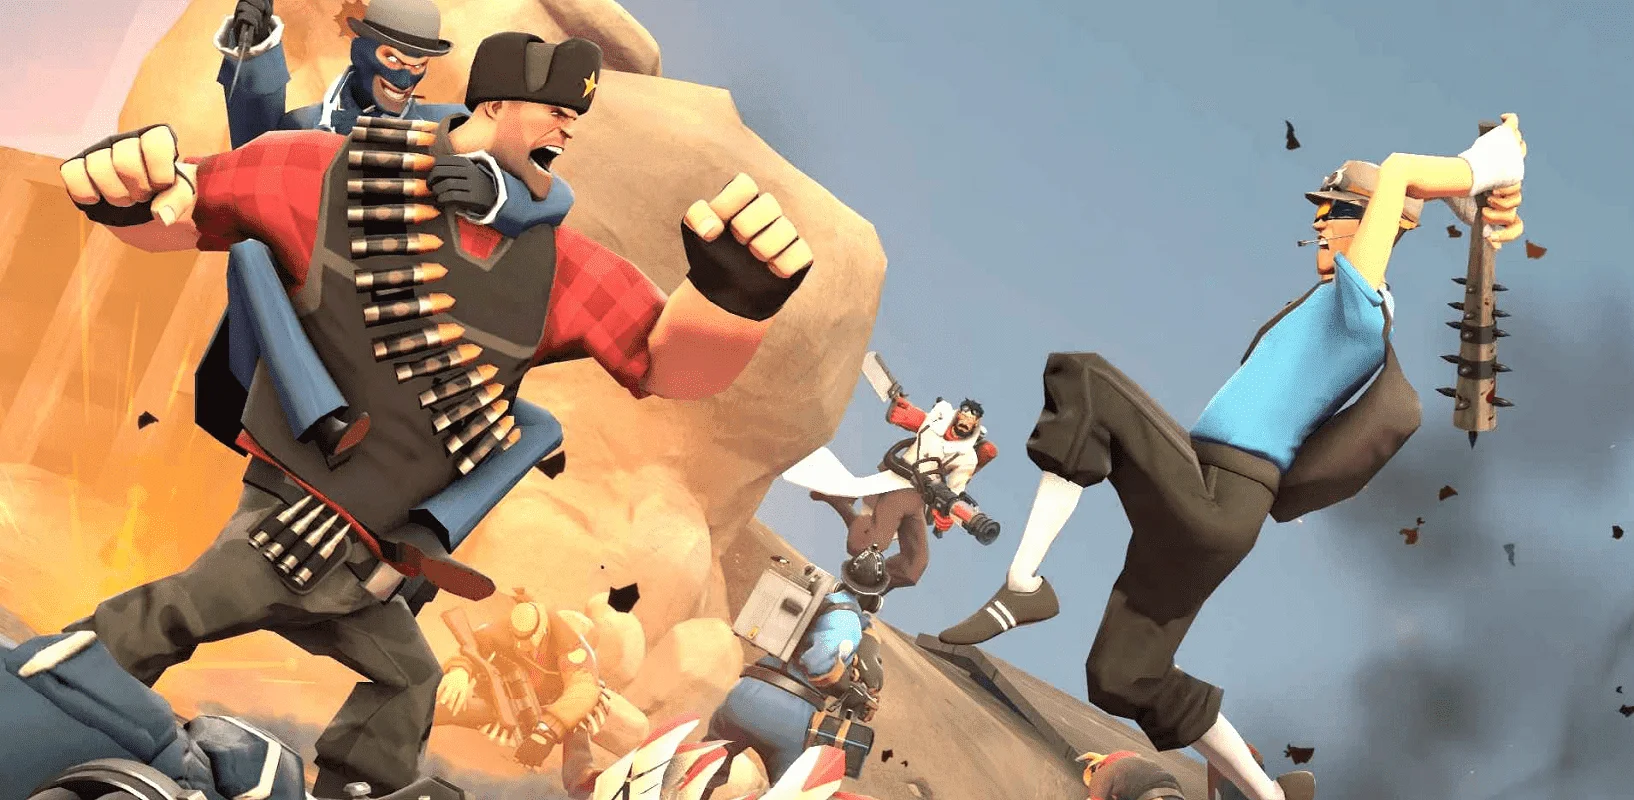 Couverture : capture d'écran du jeu Team Fortress 2